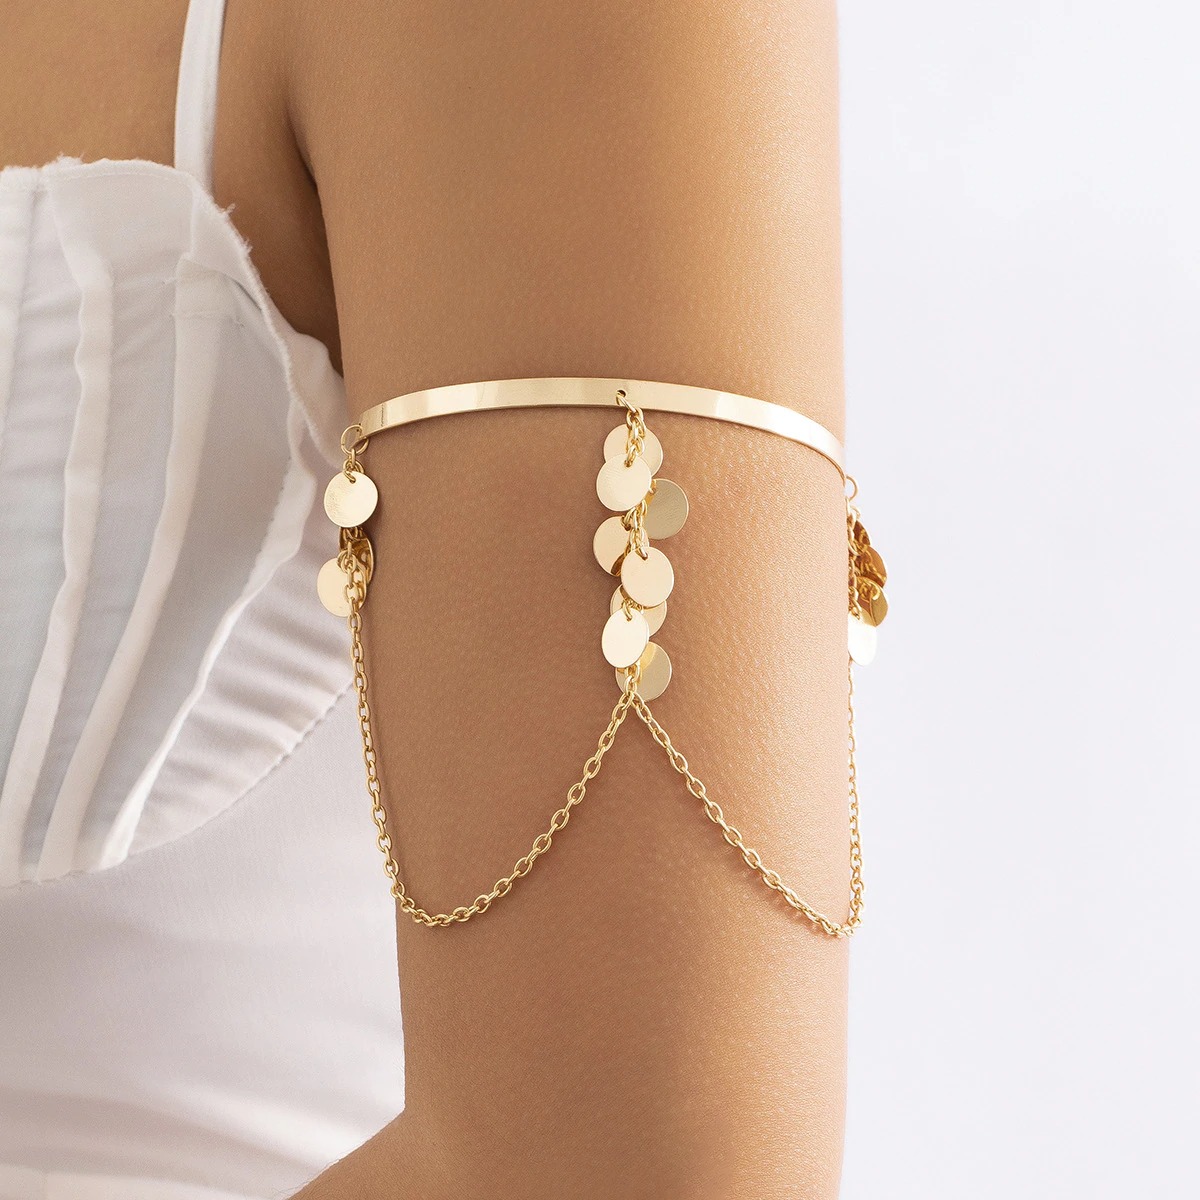 Lot de 5 Bracelets Femme | Perles Arbre Pompon cœur Chaîne